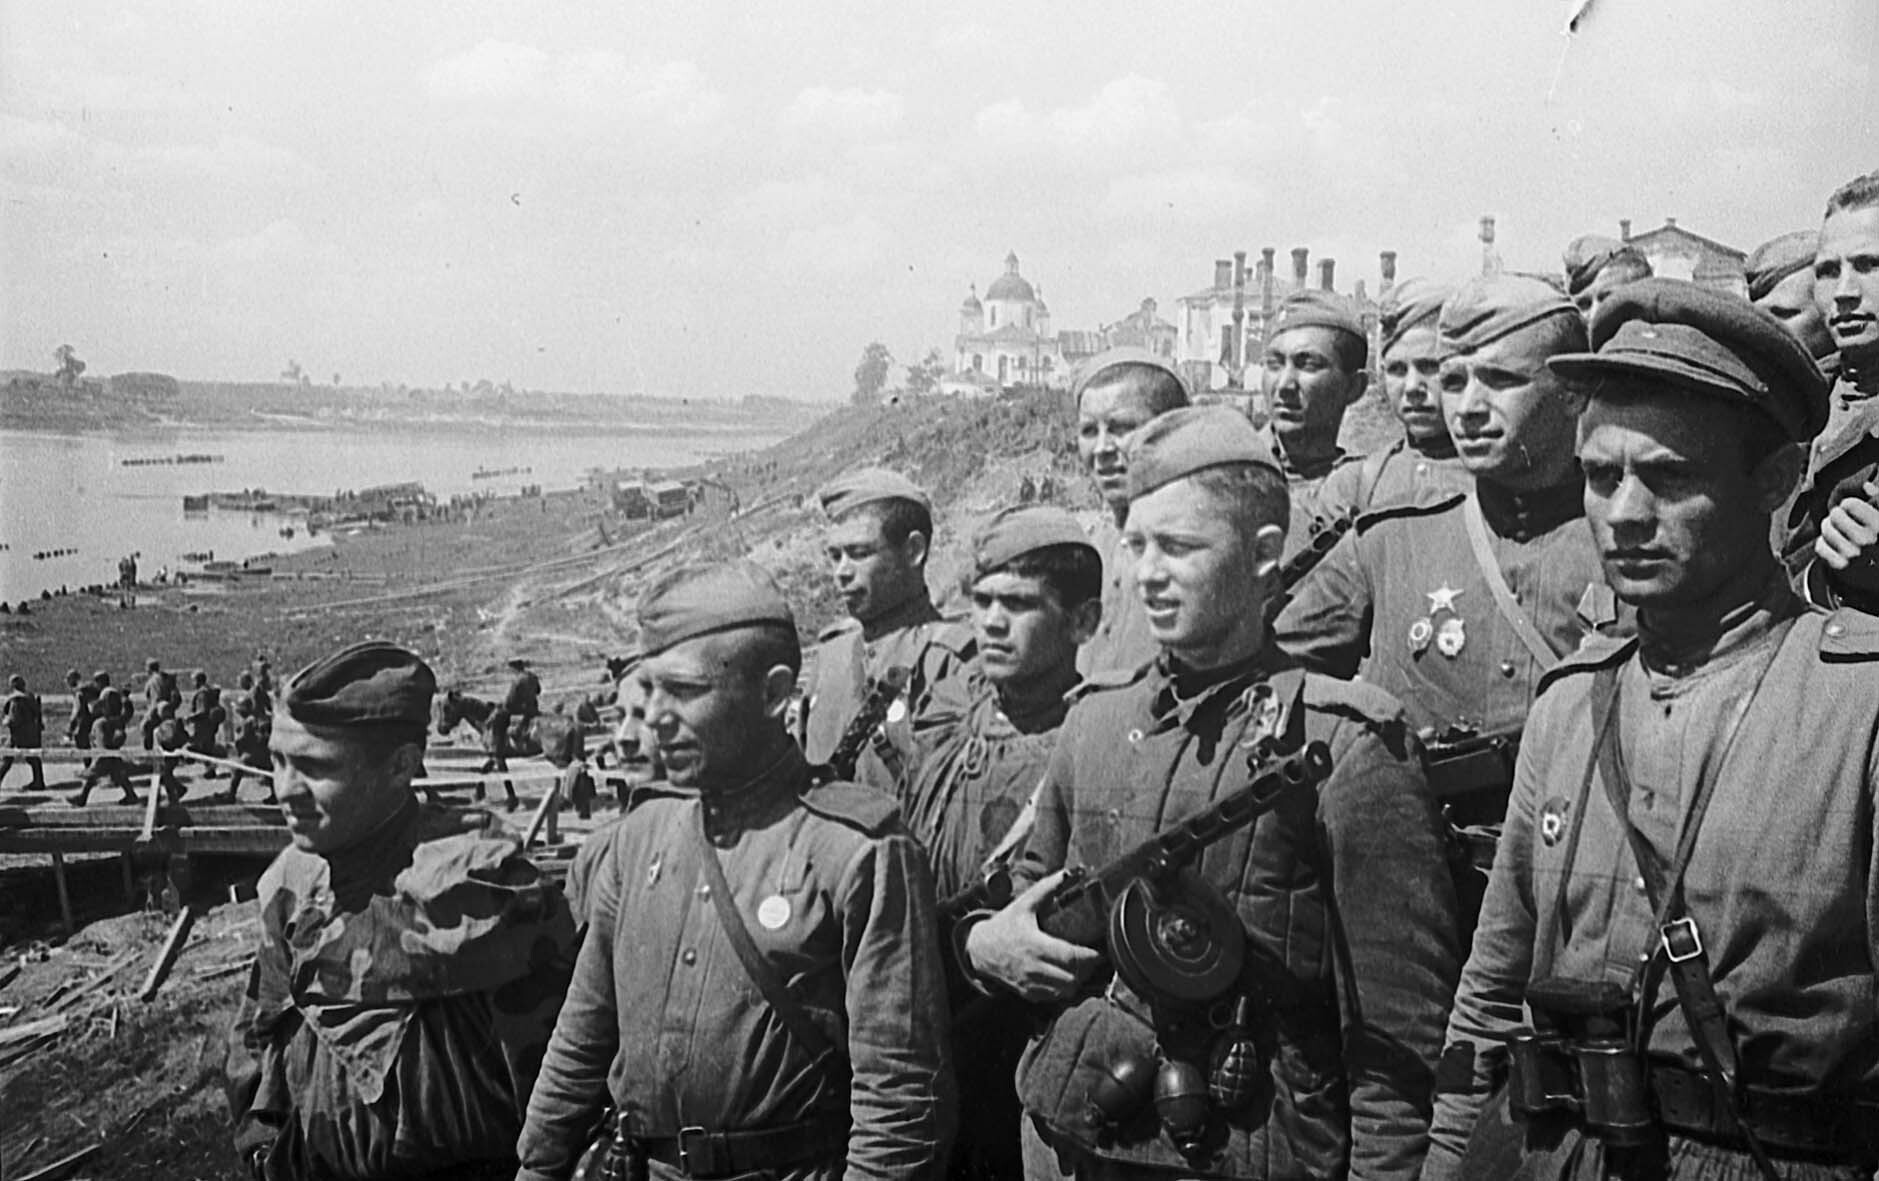 soldaten-des-274-gardeschuetzenregiments-in-polozk-nach-der-befreiung-4-juli-1944-78619-2